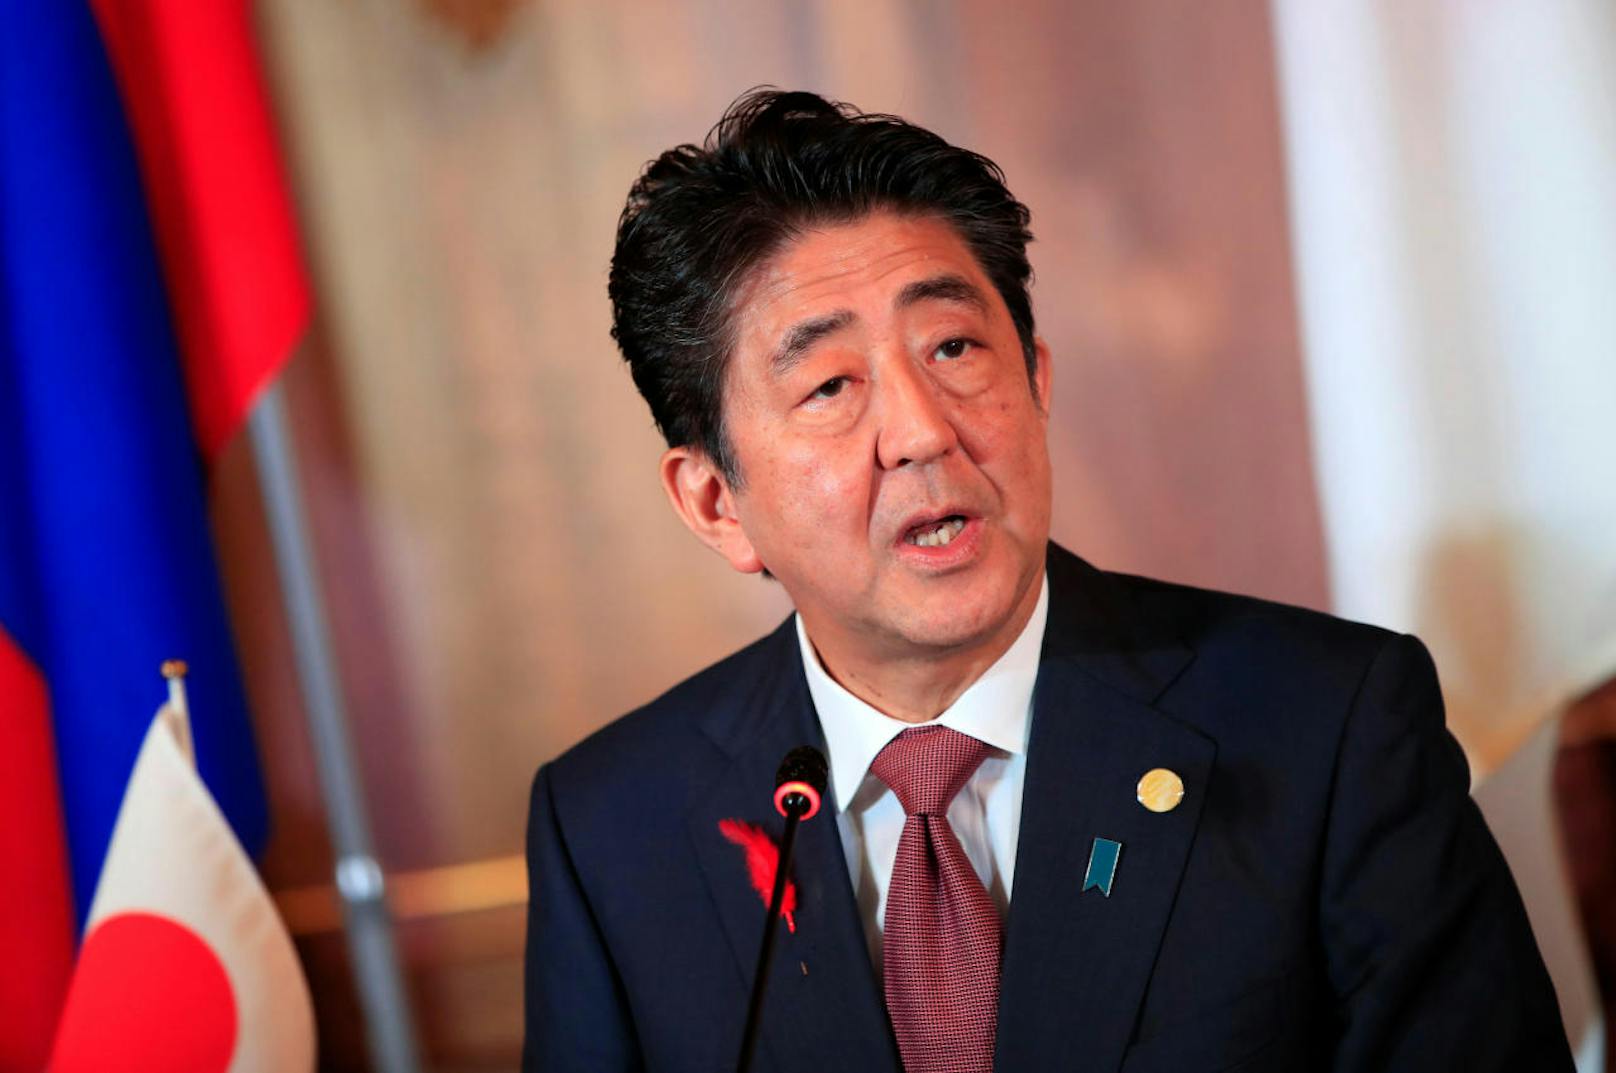 <b>Platz 20: Japan</b>
Japans Premierminister Shinzo Abe verdient etwas weniger als der Bundeskanzler, nämlich 242.600 Euro pro Jahr. Das Jahresgehalt in Japan liegt im Schnitt bei einem Sechstel davon, nämlich 38.800 Euro.